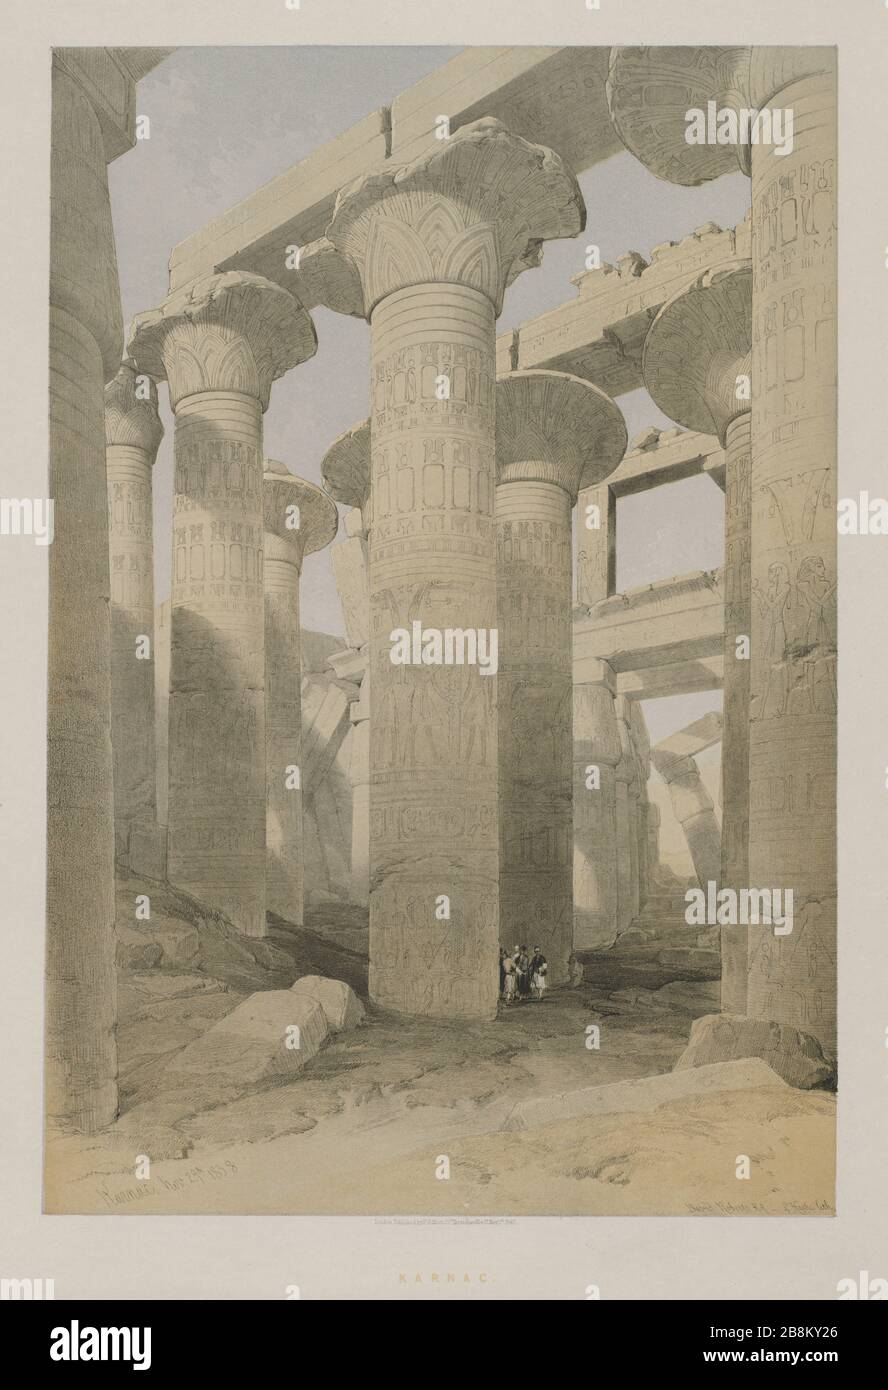 Karnac (Karnak) Egypte Egypte et Nubia, Volume II : Karnac, 1847. Louis Haghe (britannique, 1806-1885), F. G. Moon, 20, rue Threadneedle, Londres, après David Roberts (britannique, 1796-1864). Lithographie couleur; feuille: 60,3 x 43,6 cm (23 3/4 x 17 3/16 in); image: 48,7 x 32,7 cm (19 3/16 x 12 7/8 in) Banque D'Images